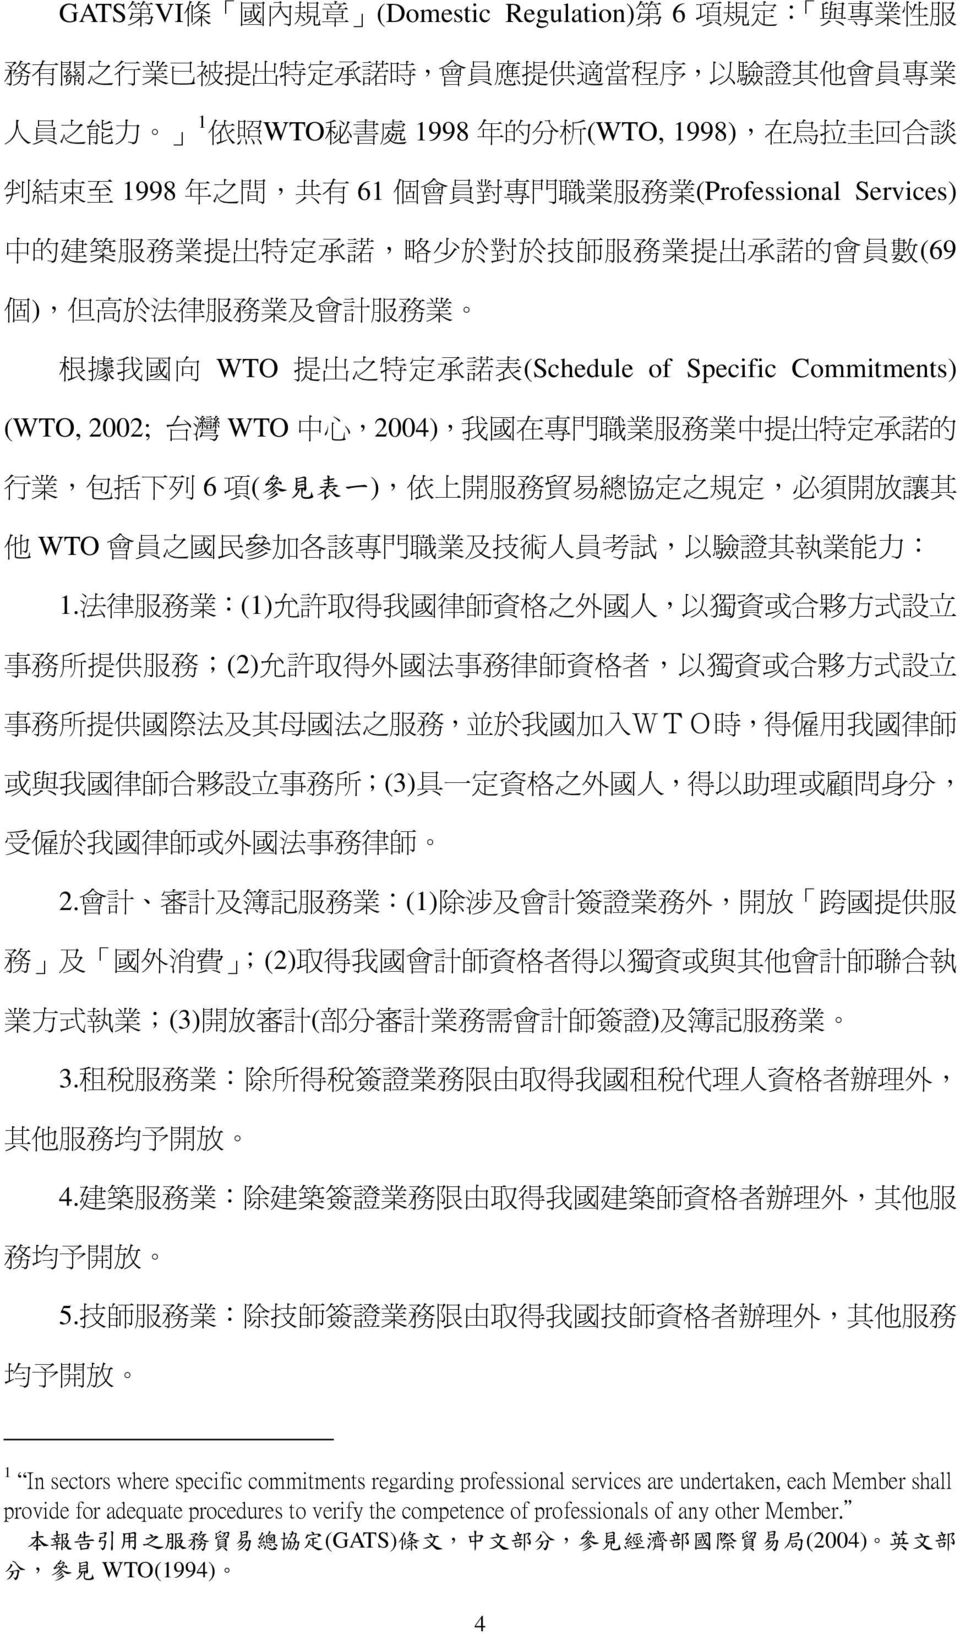 表 (Schedule of Specific Commitments) (WTO, 2002; 台 灣 WTO 中 心,2004), 我 國 在 專 門 職 業 服 務 業 中 提 出 特 定 承 諾 的 行 業, 包 括 下 列 6 項 ( 參 見 表 一 ), 依 上 開 服 務 貿 易 總 協 定 之 規 定, 必 須 開 放 讓 其 他 WTO 會 員 之 國 民 參 加 各 該 專